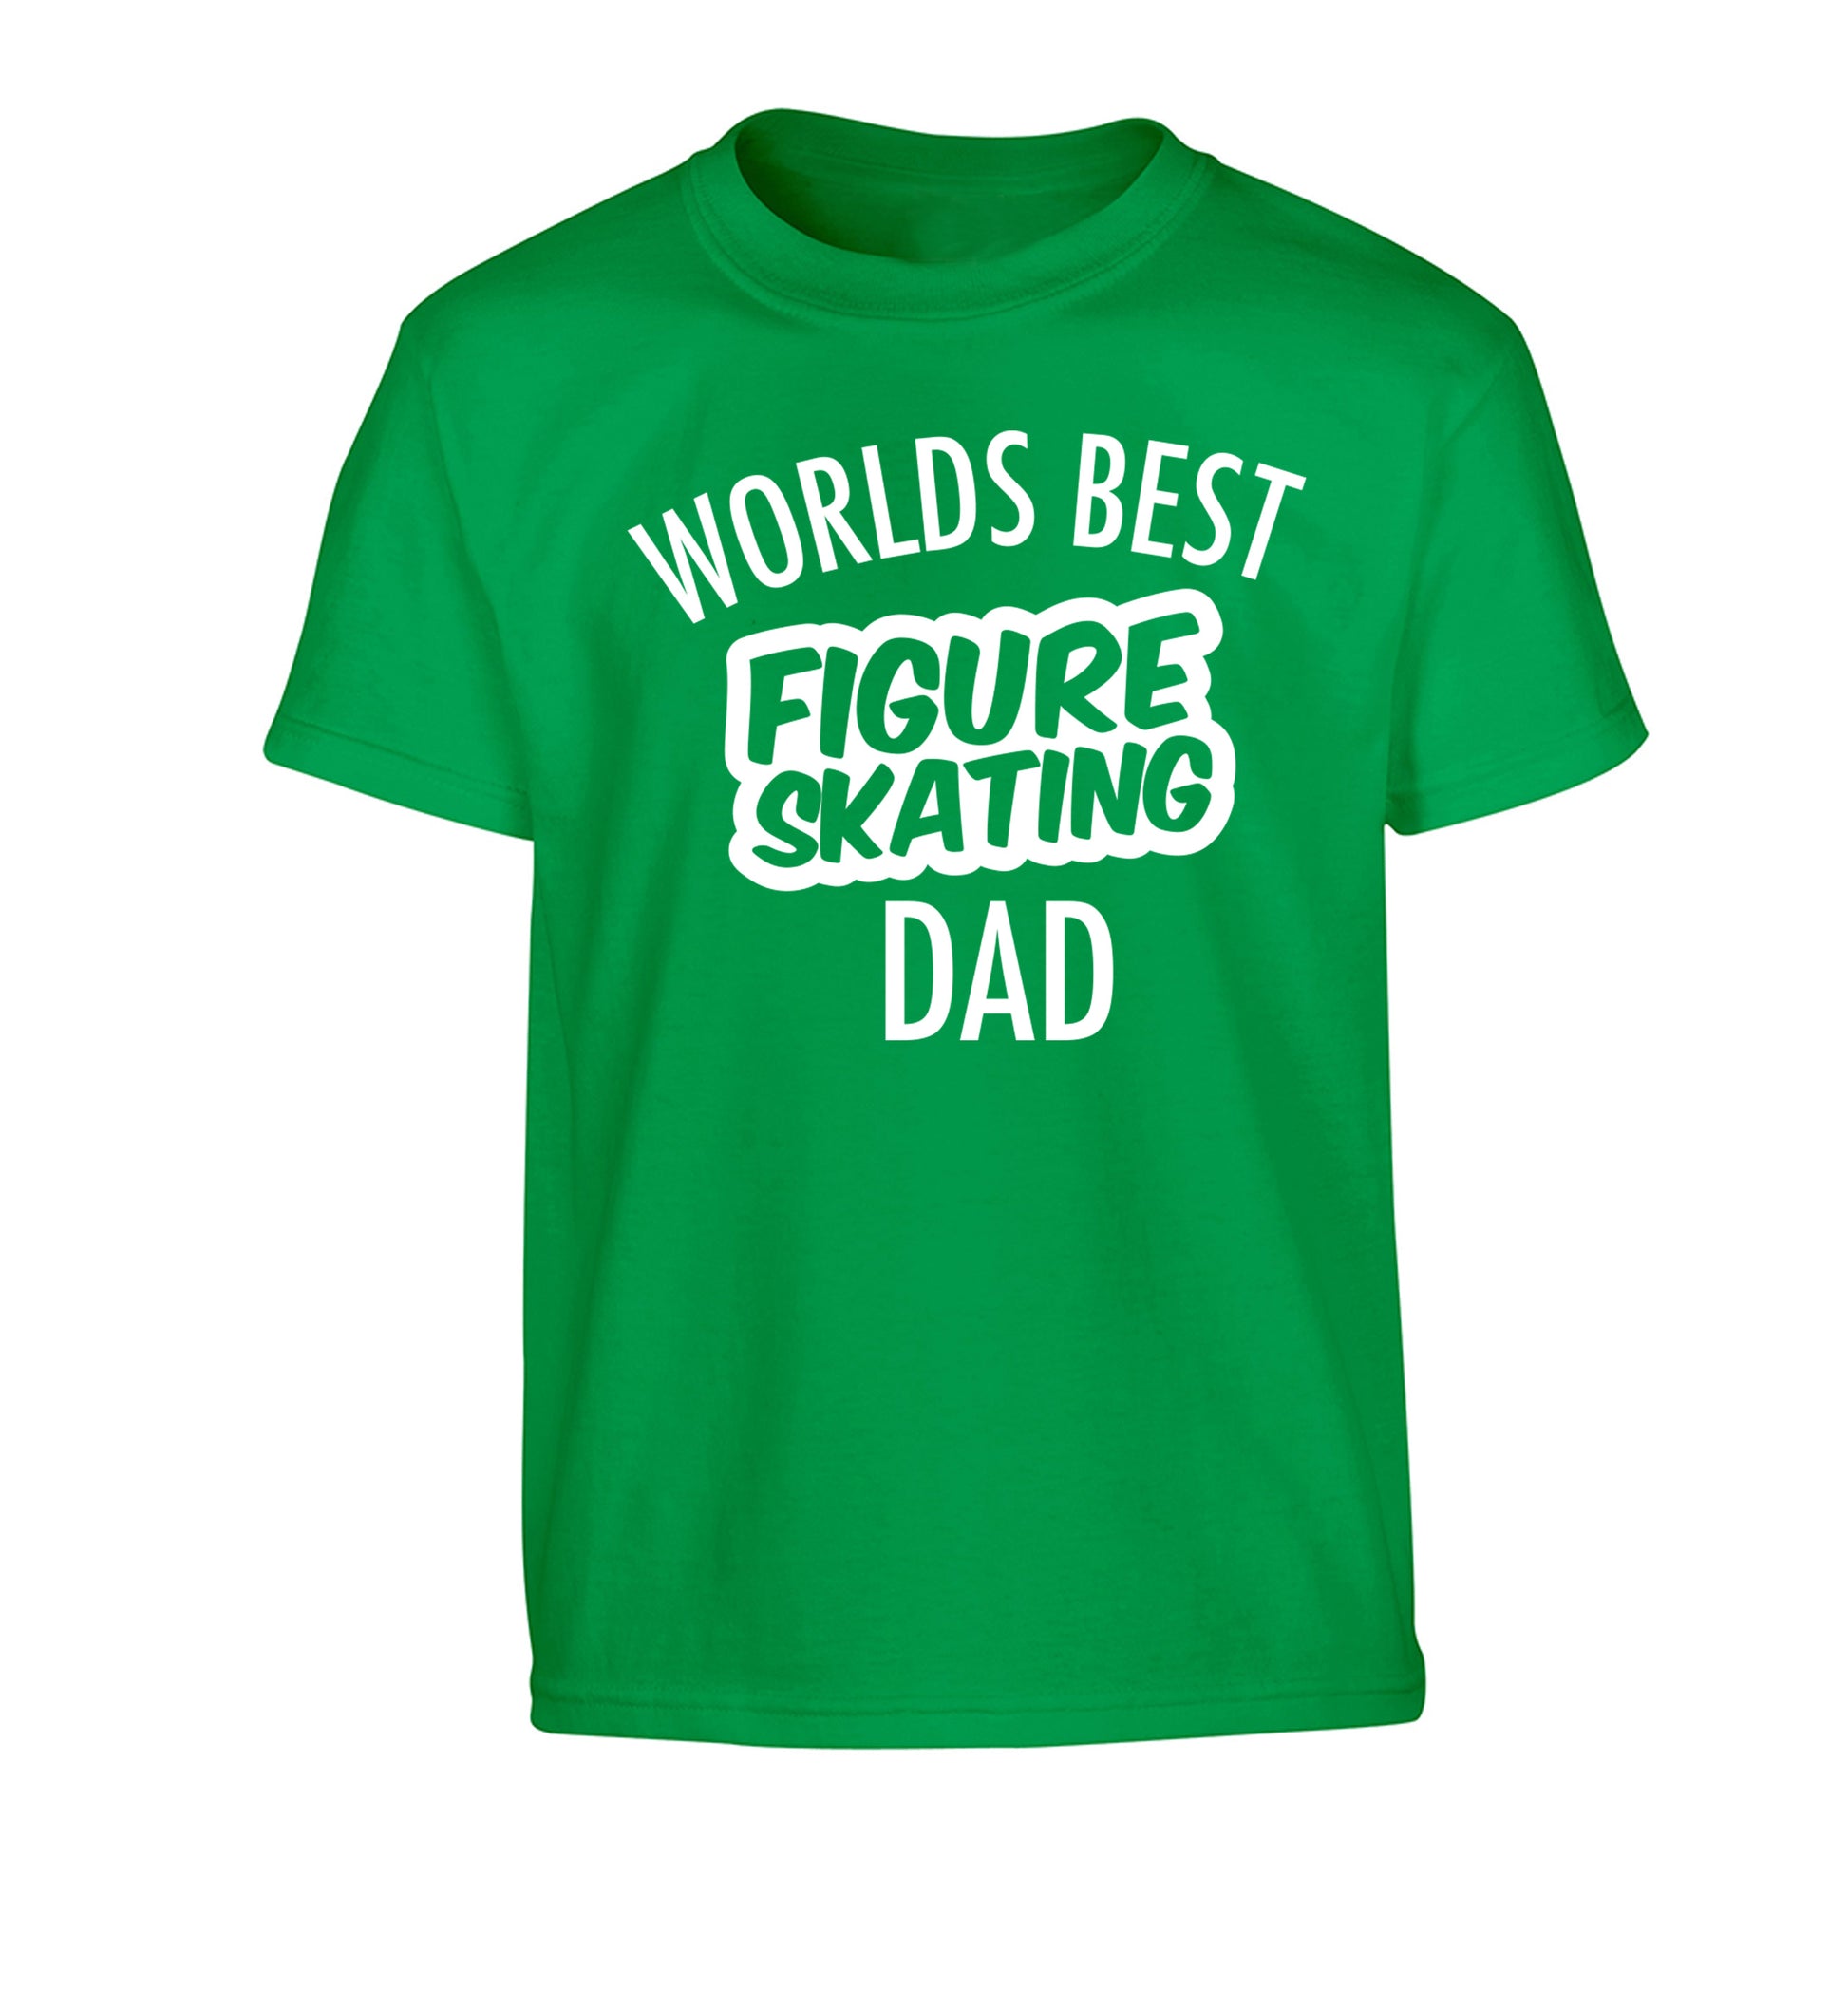 Worlds best figure skating dad Children's green Tshirt 12-14 Years